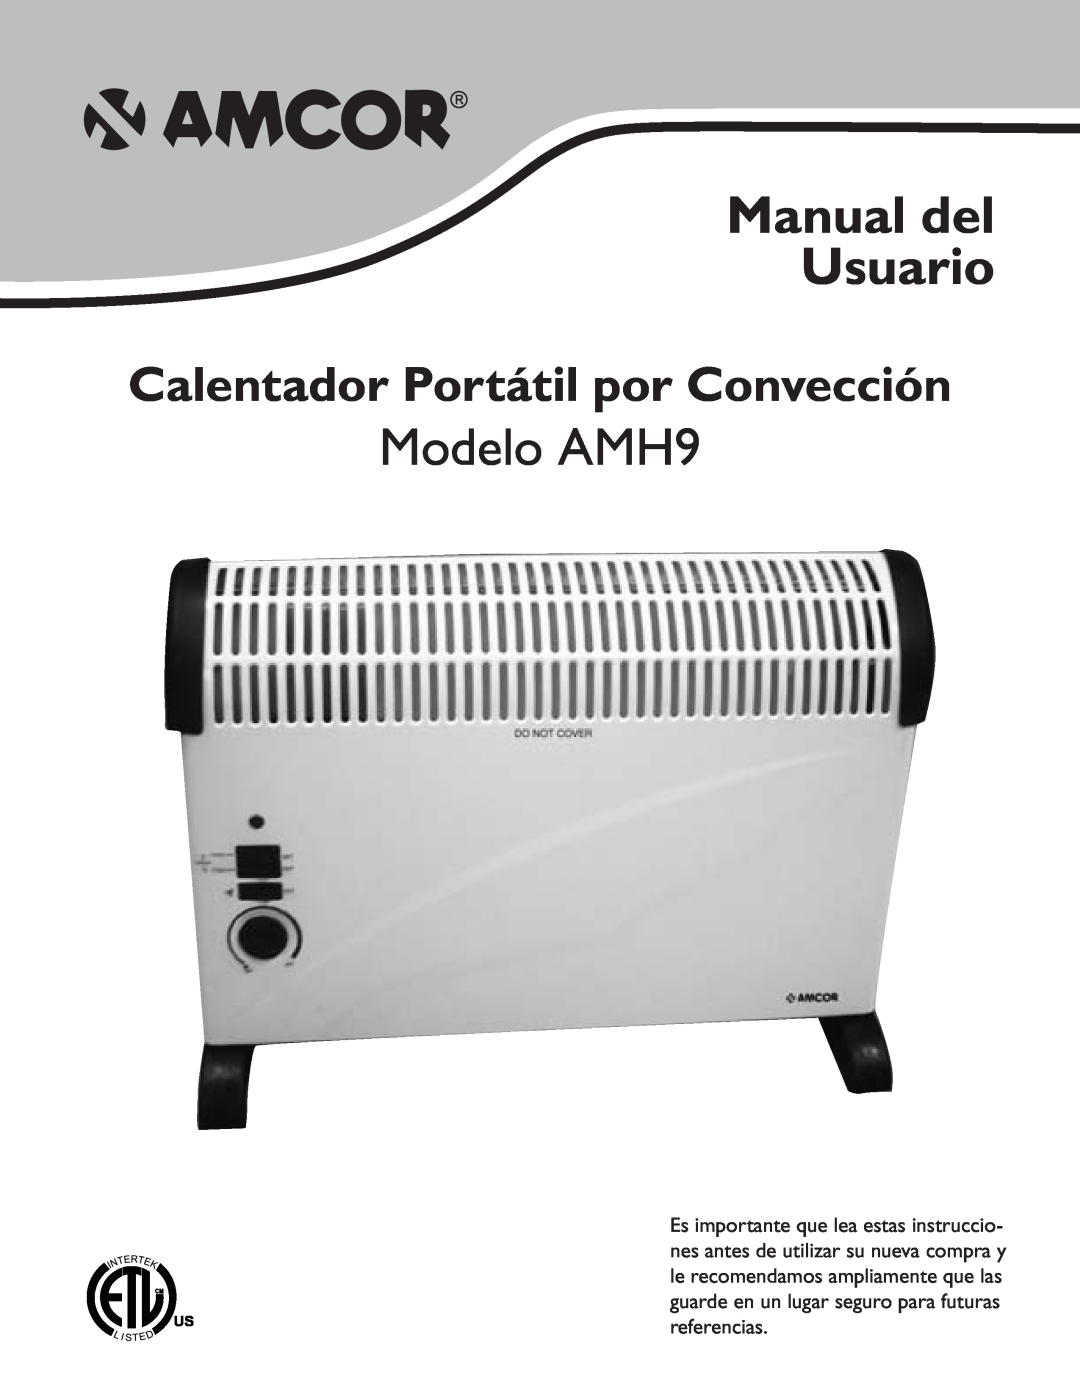 Amcor owner manual Manual del Usuario, Modelo AMH9, Calentador Portátil por Convección 